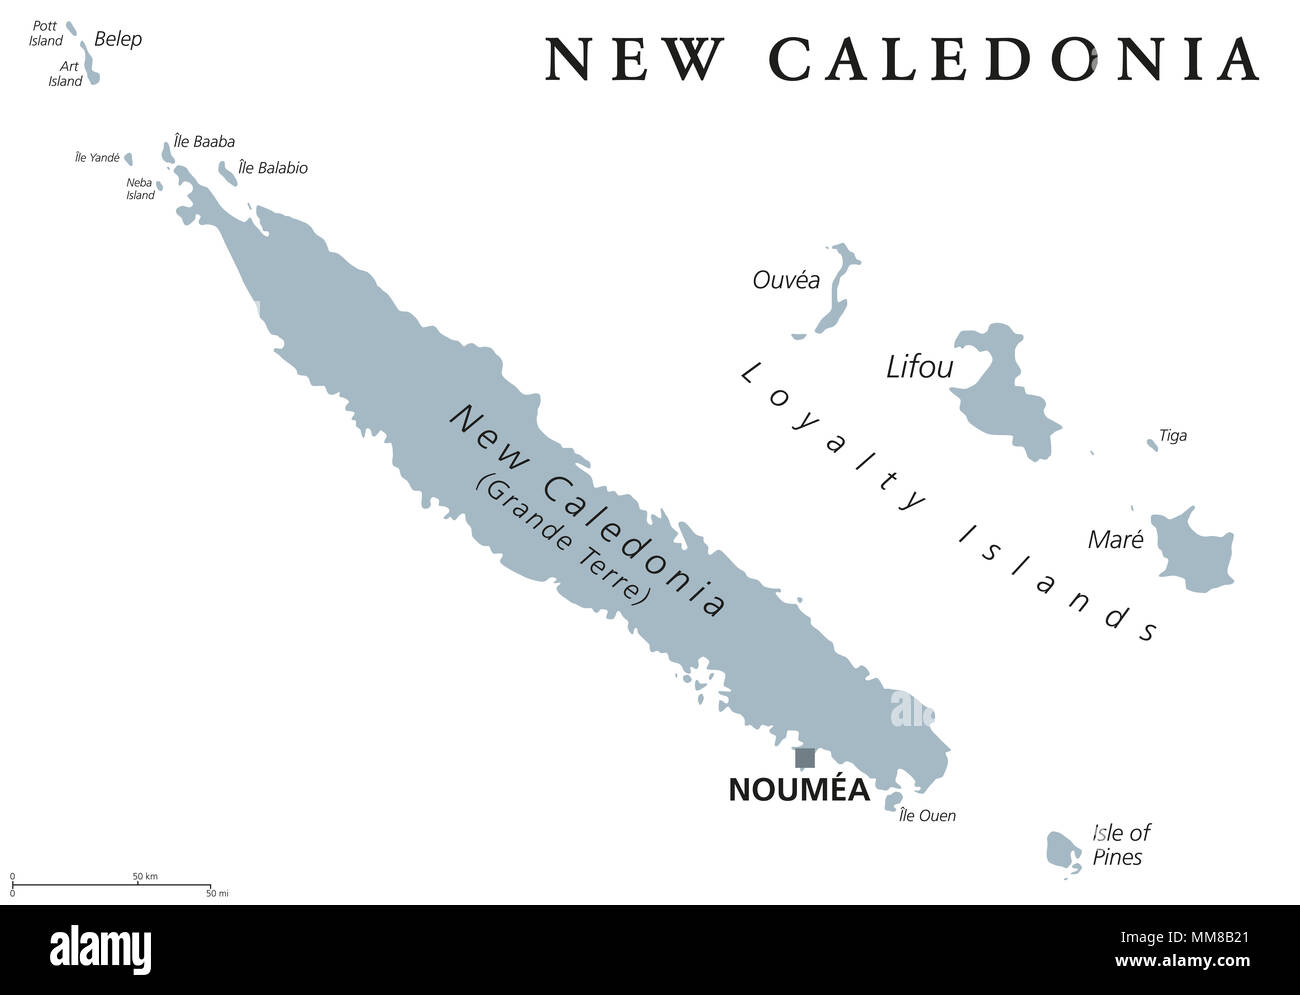 Нова каледония на карте. Остров новая Каледония на карте. Новая Каледония на карте.